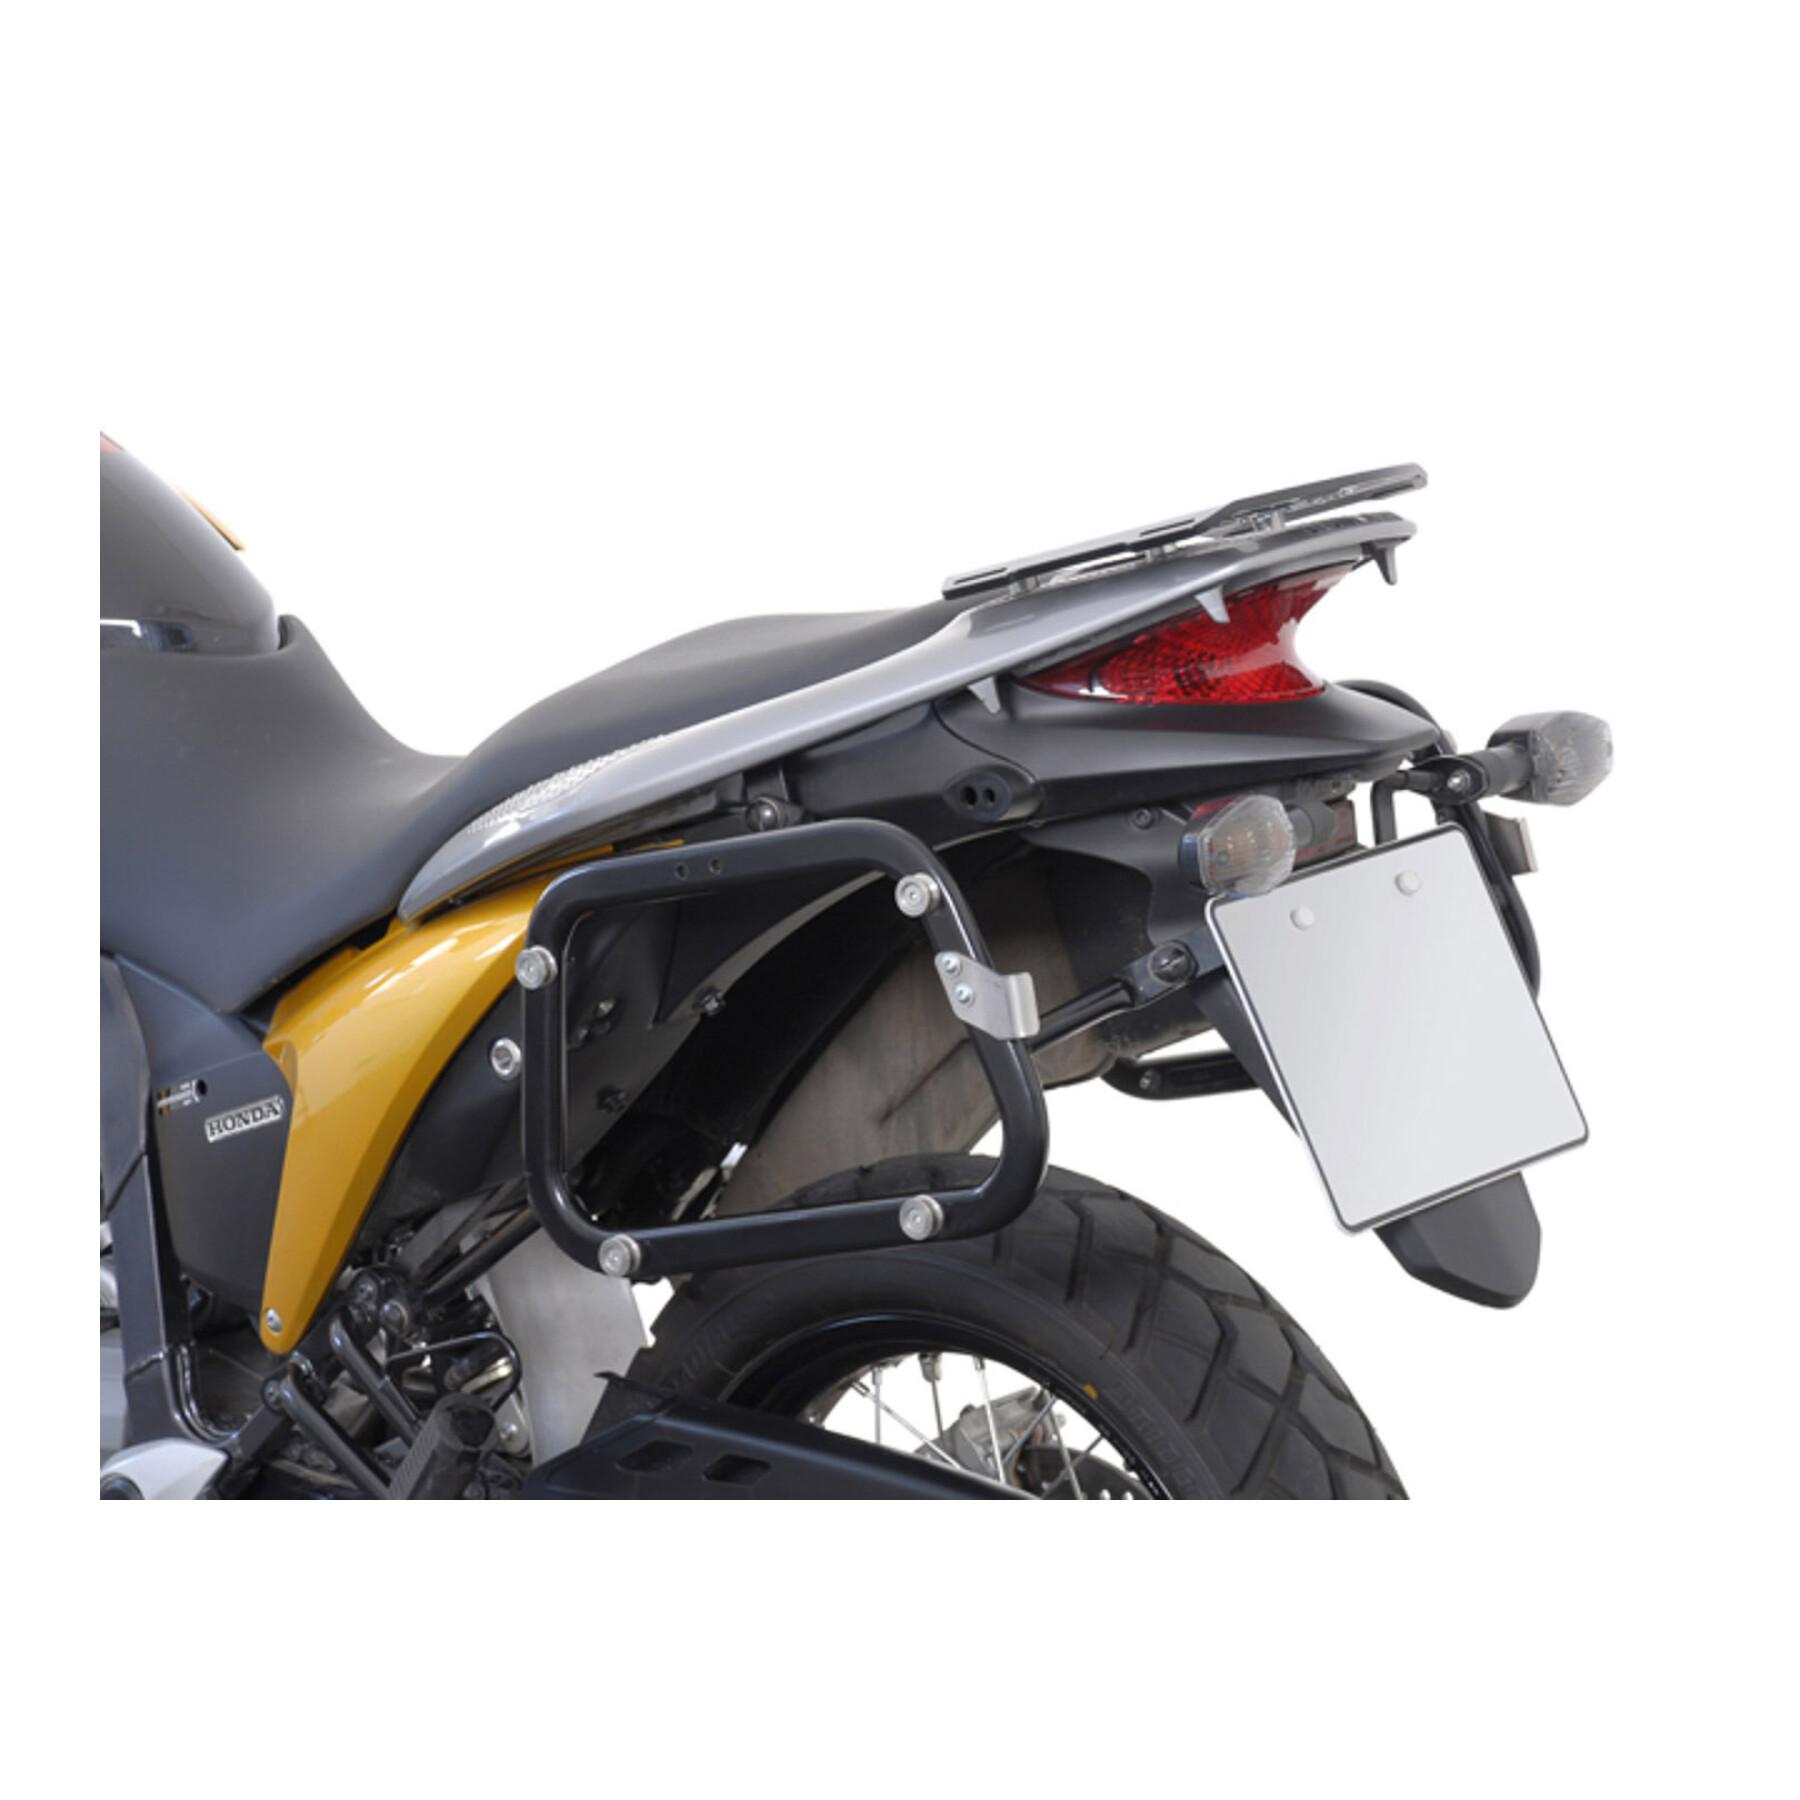 Soporte de la maleta lateral de la moto Sw-Motech Evo. Honda Xl 700 V Transalp (07-12)